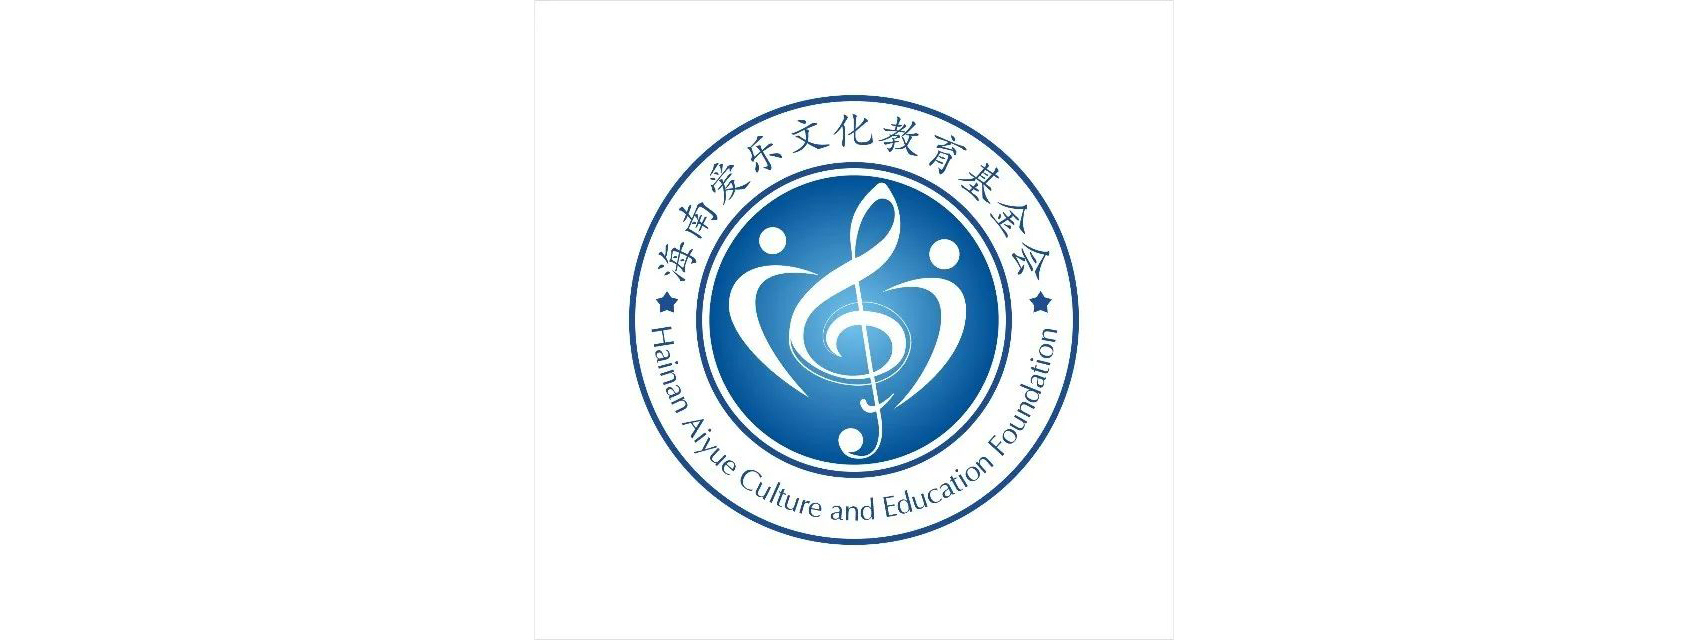 海南爱乐文化教育基金会